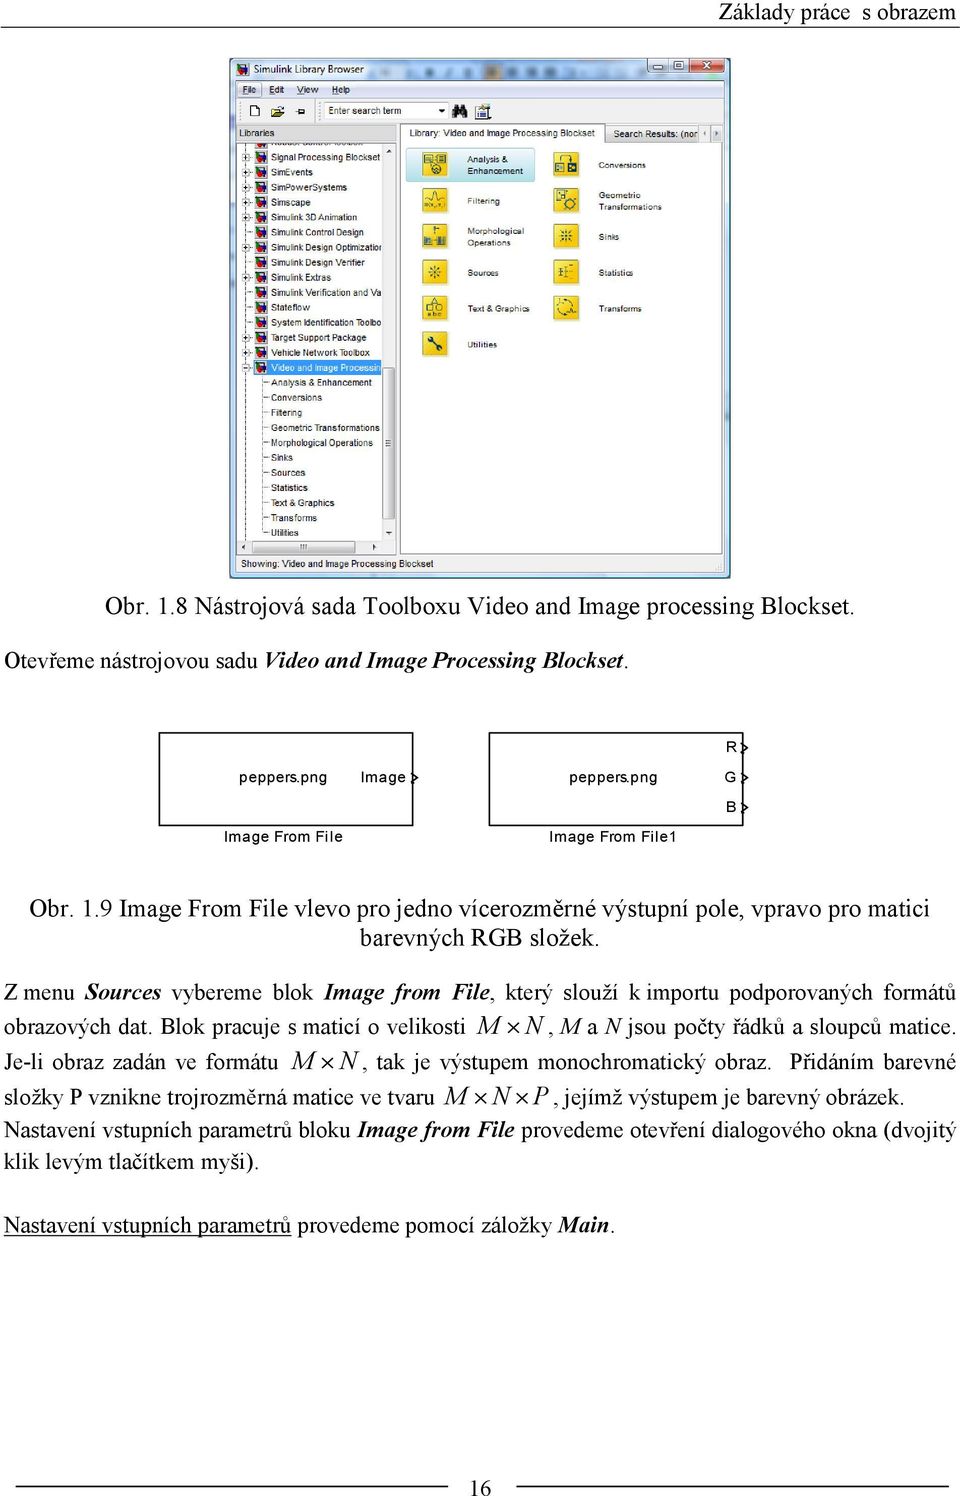 Z menu Sources vybereme blok Image from File, který slouží k importu podporovaných formátů obrazových dat. Blok pracuje s maticí o velikosti M N, M a N jsou počty řádků a sloupců matice.